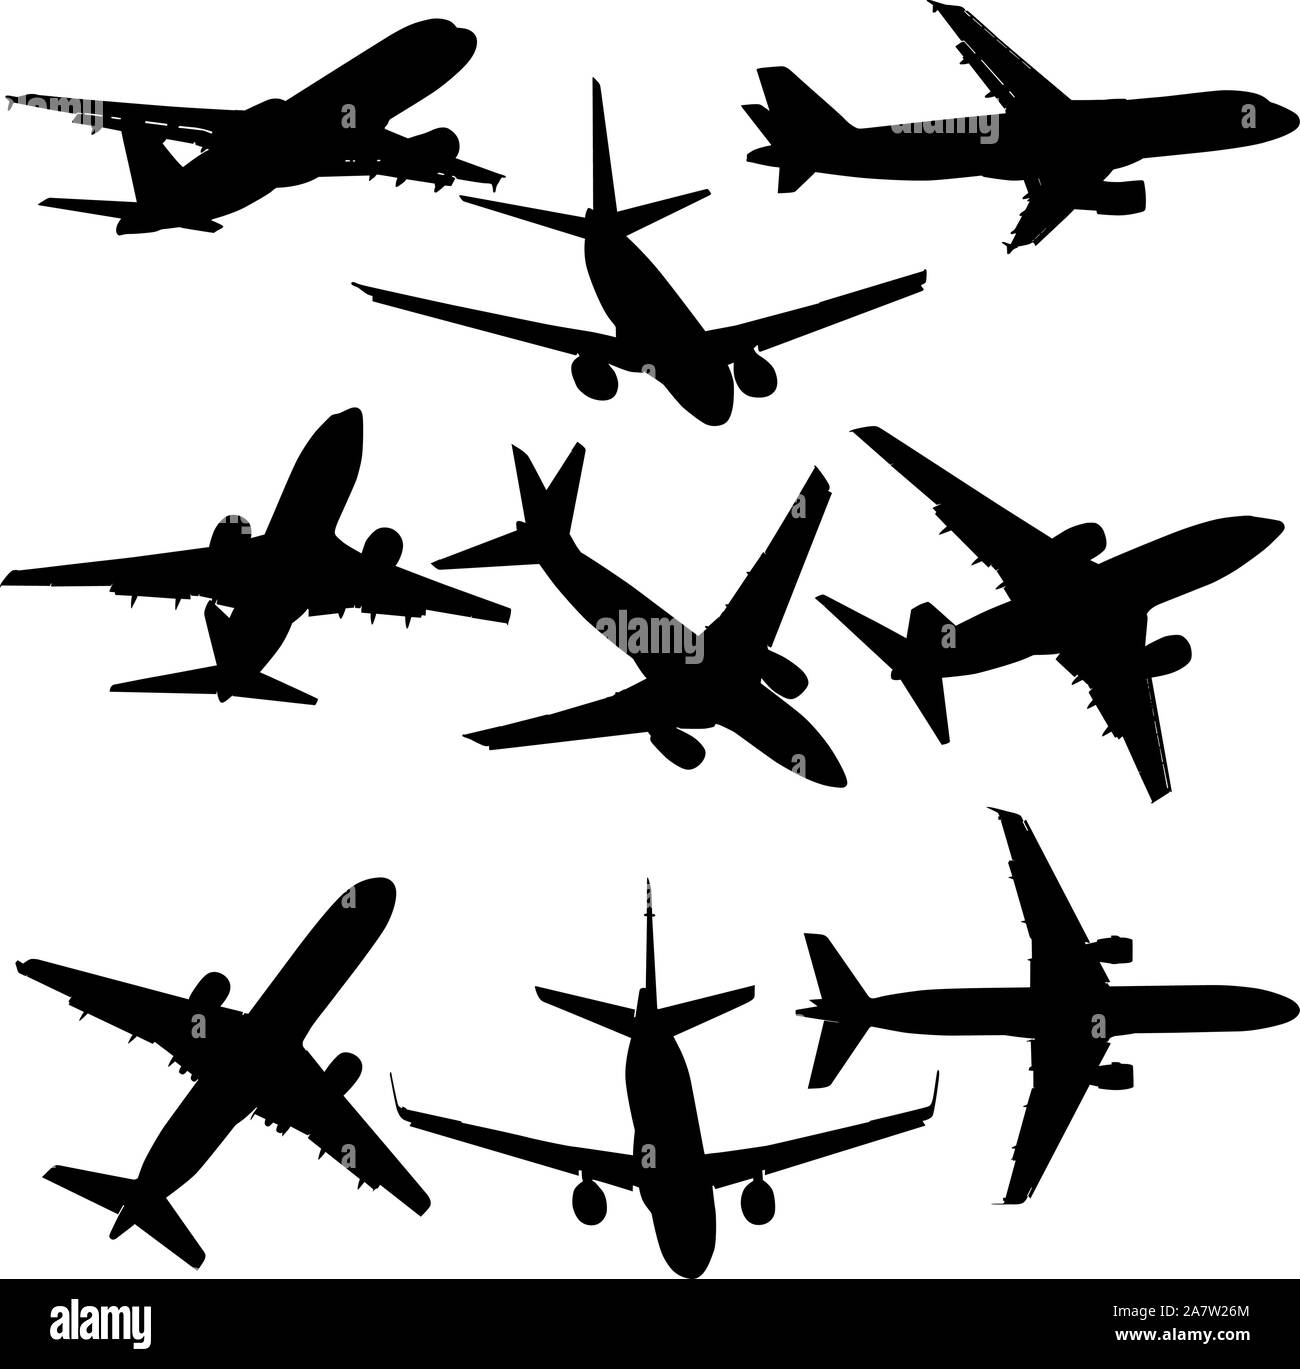 Set di sagome di aerei di epoche differenti su uno sfondo bianco. Illustrazione Vettoriale